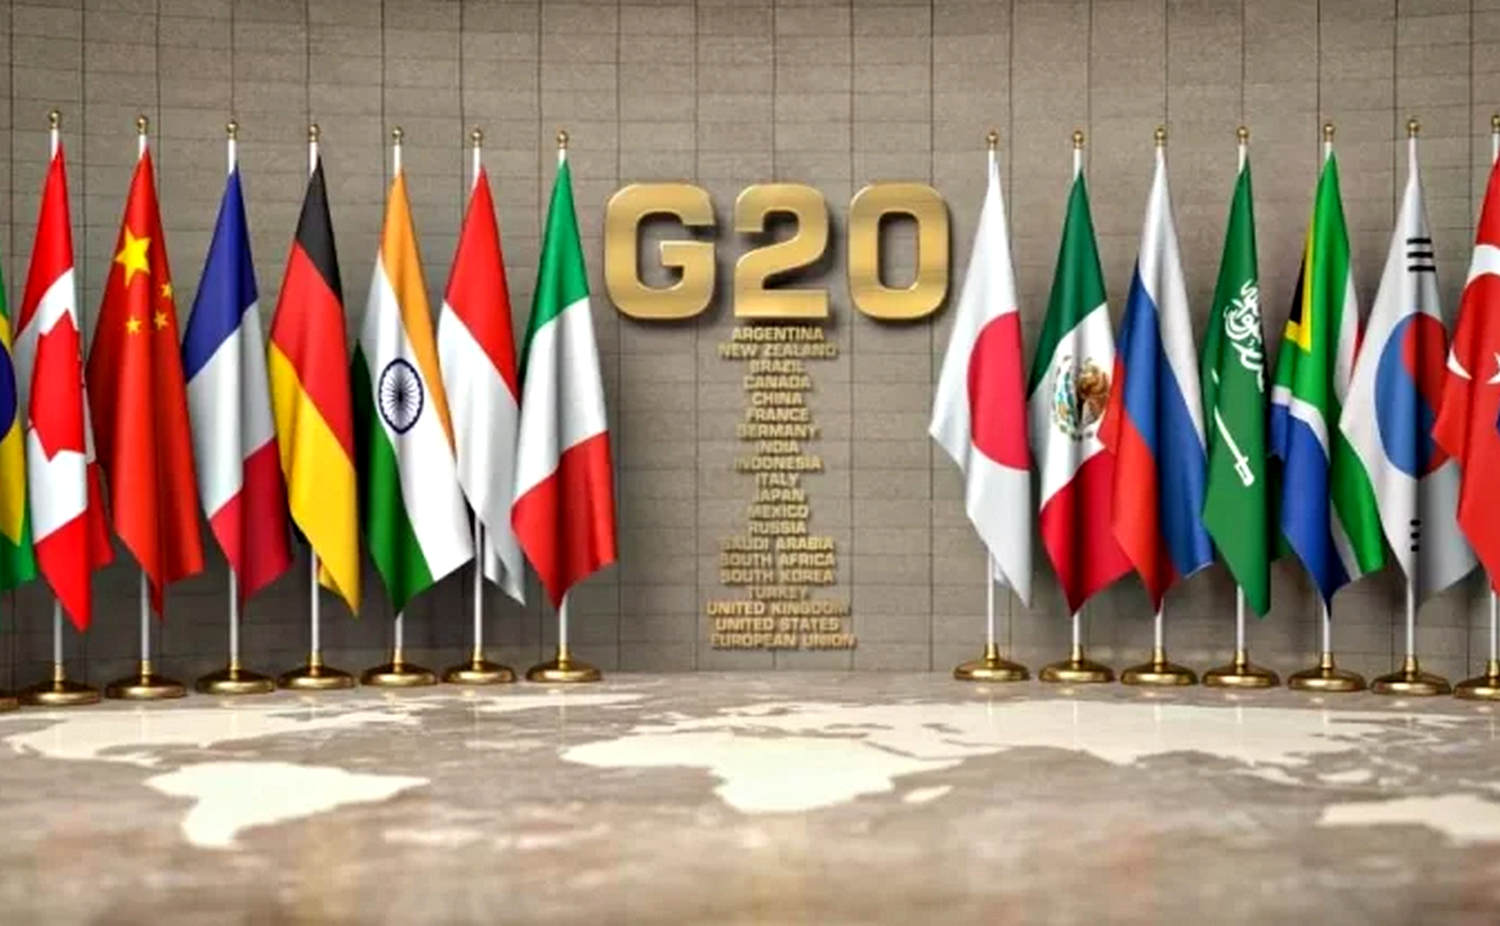 Прапори "Великої двадцятки".